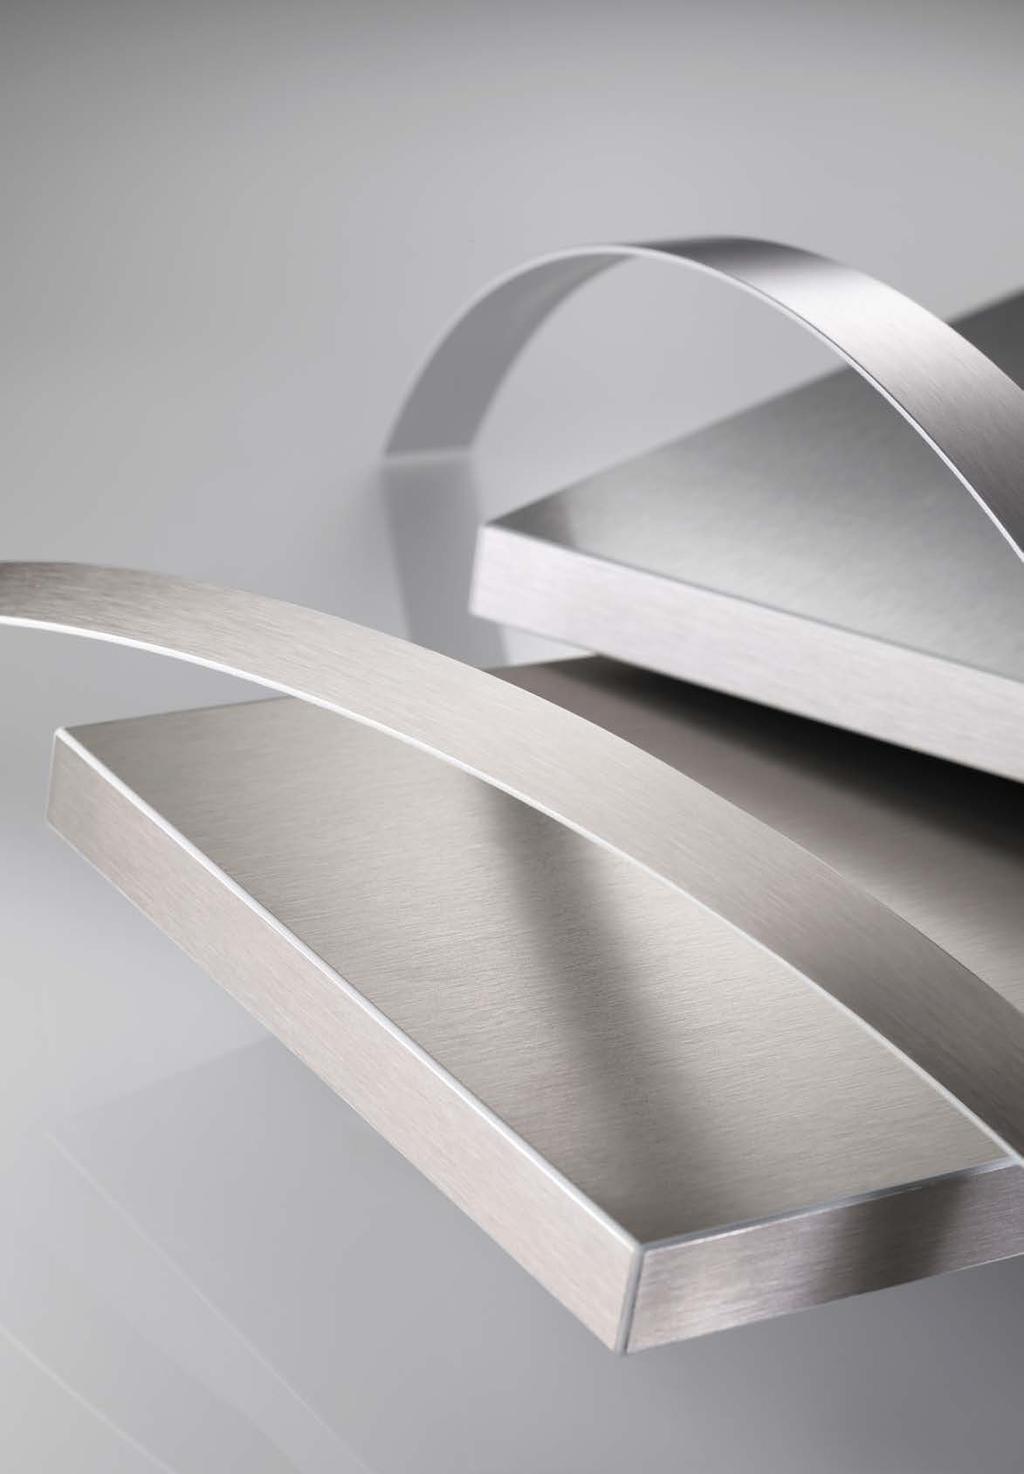 RAUKANTEX MAGIC II Premium Selection: Metalloptik-Kanten Ob kühles Aluminium oder hochwertiger Edelstahl vom Werkstoff Metall geht nach wie vor eine große Faszination für die Designwelt aus.